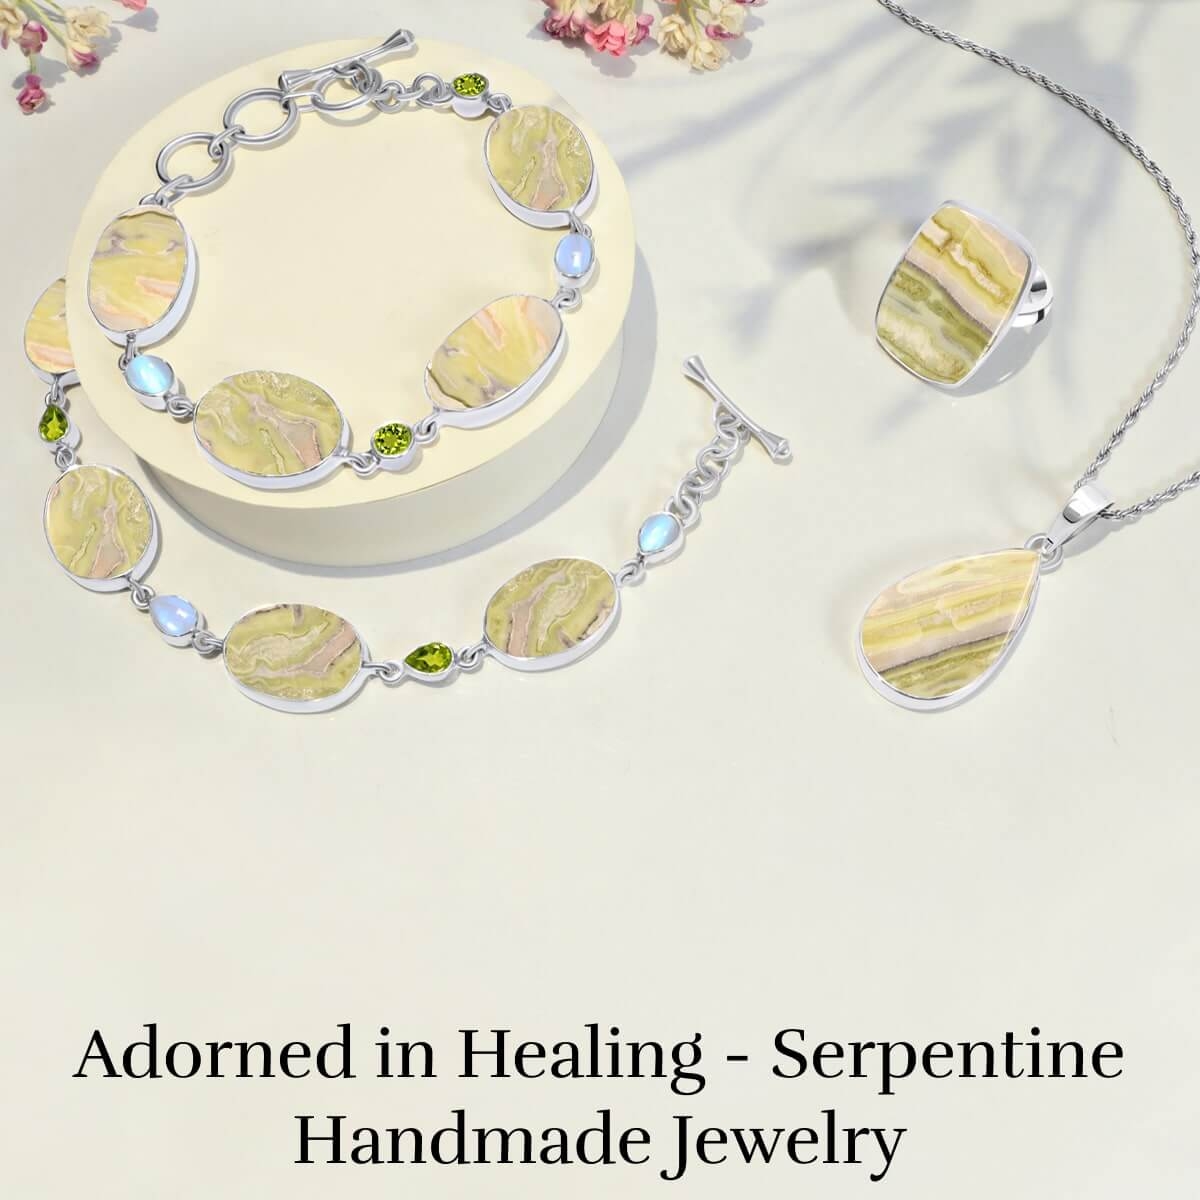 Wearing Serpentine Handmade Jewelry Helps in Emotional Healing